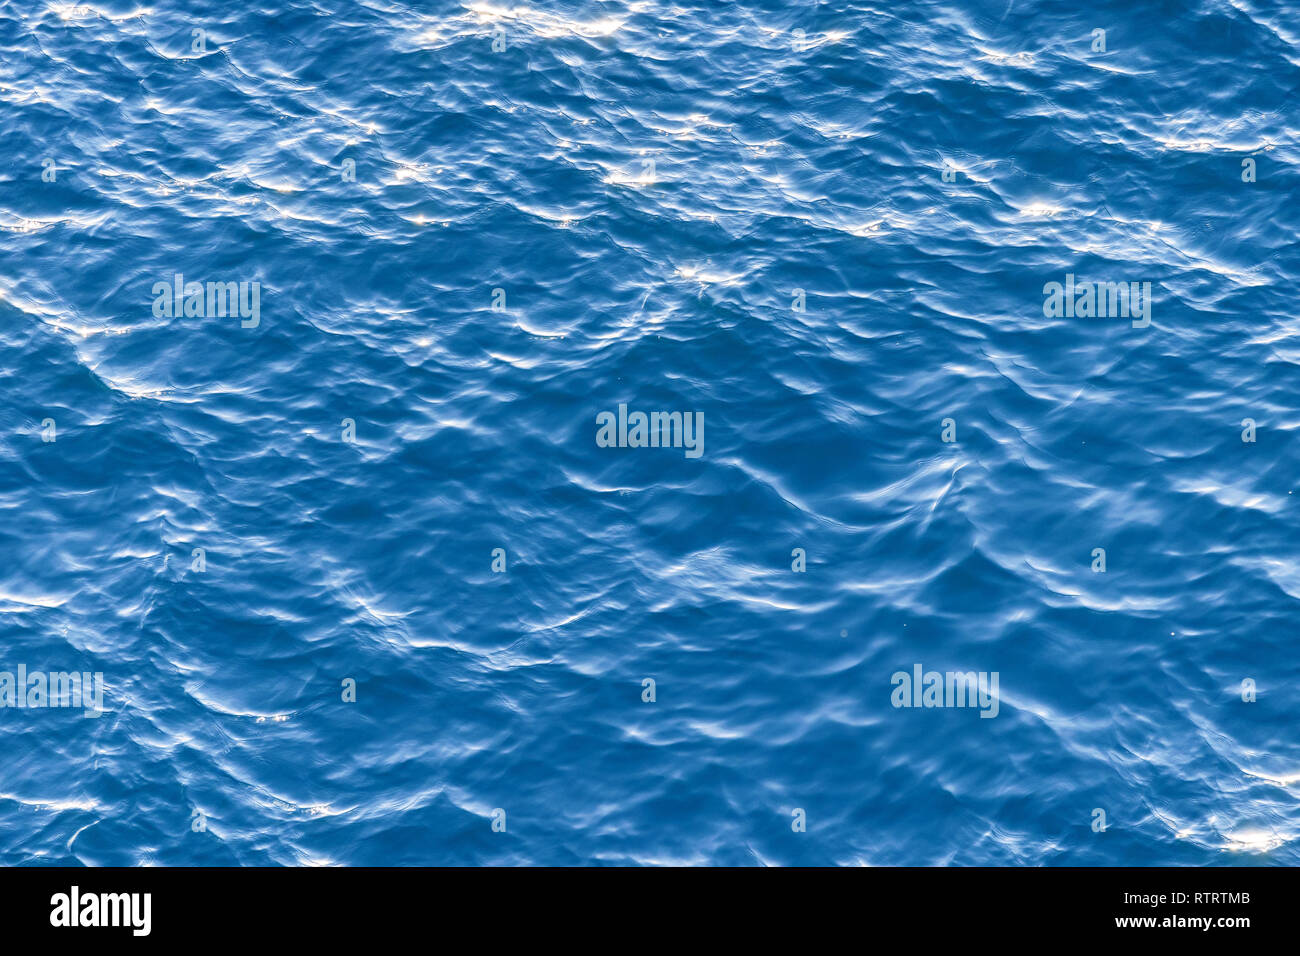 Unduh 7200 Koleksi Background Blue Ocean Image HD Paling Keren